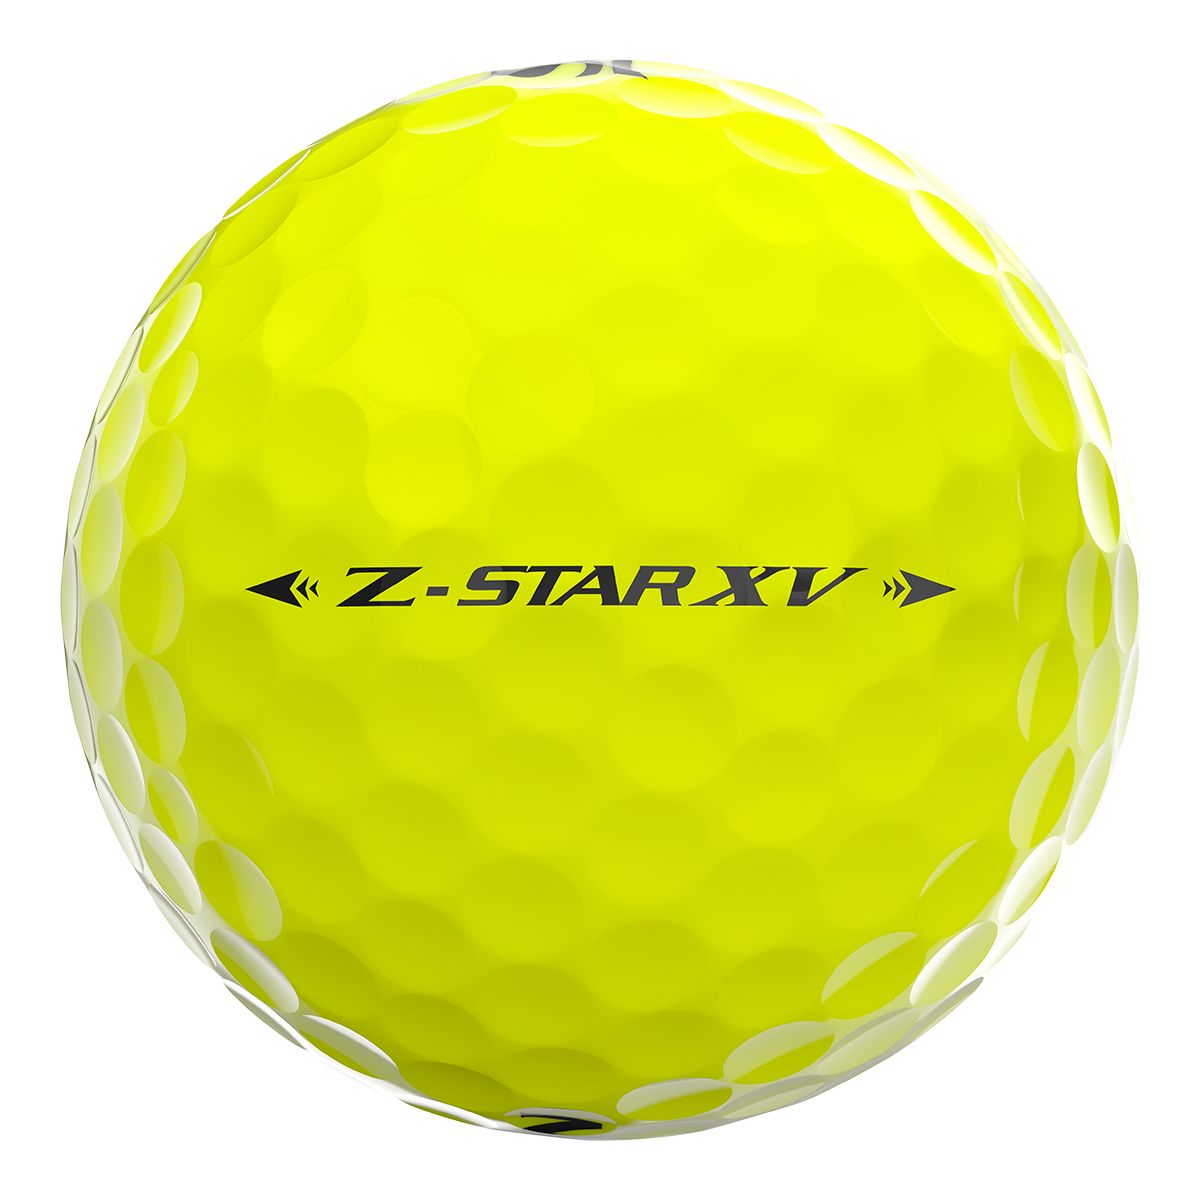 Srixon Z-Star XV 7 Golf Balls, 12 Pack | Sportchek